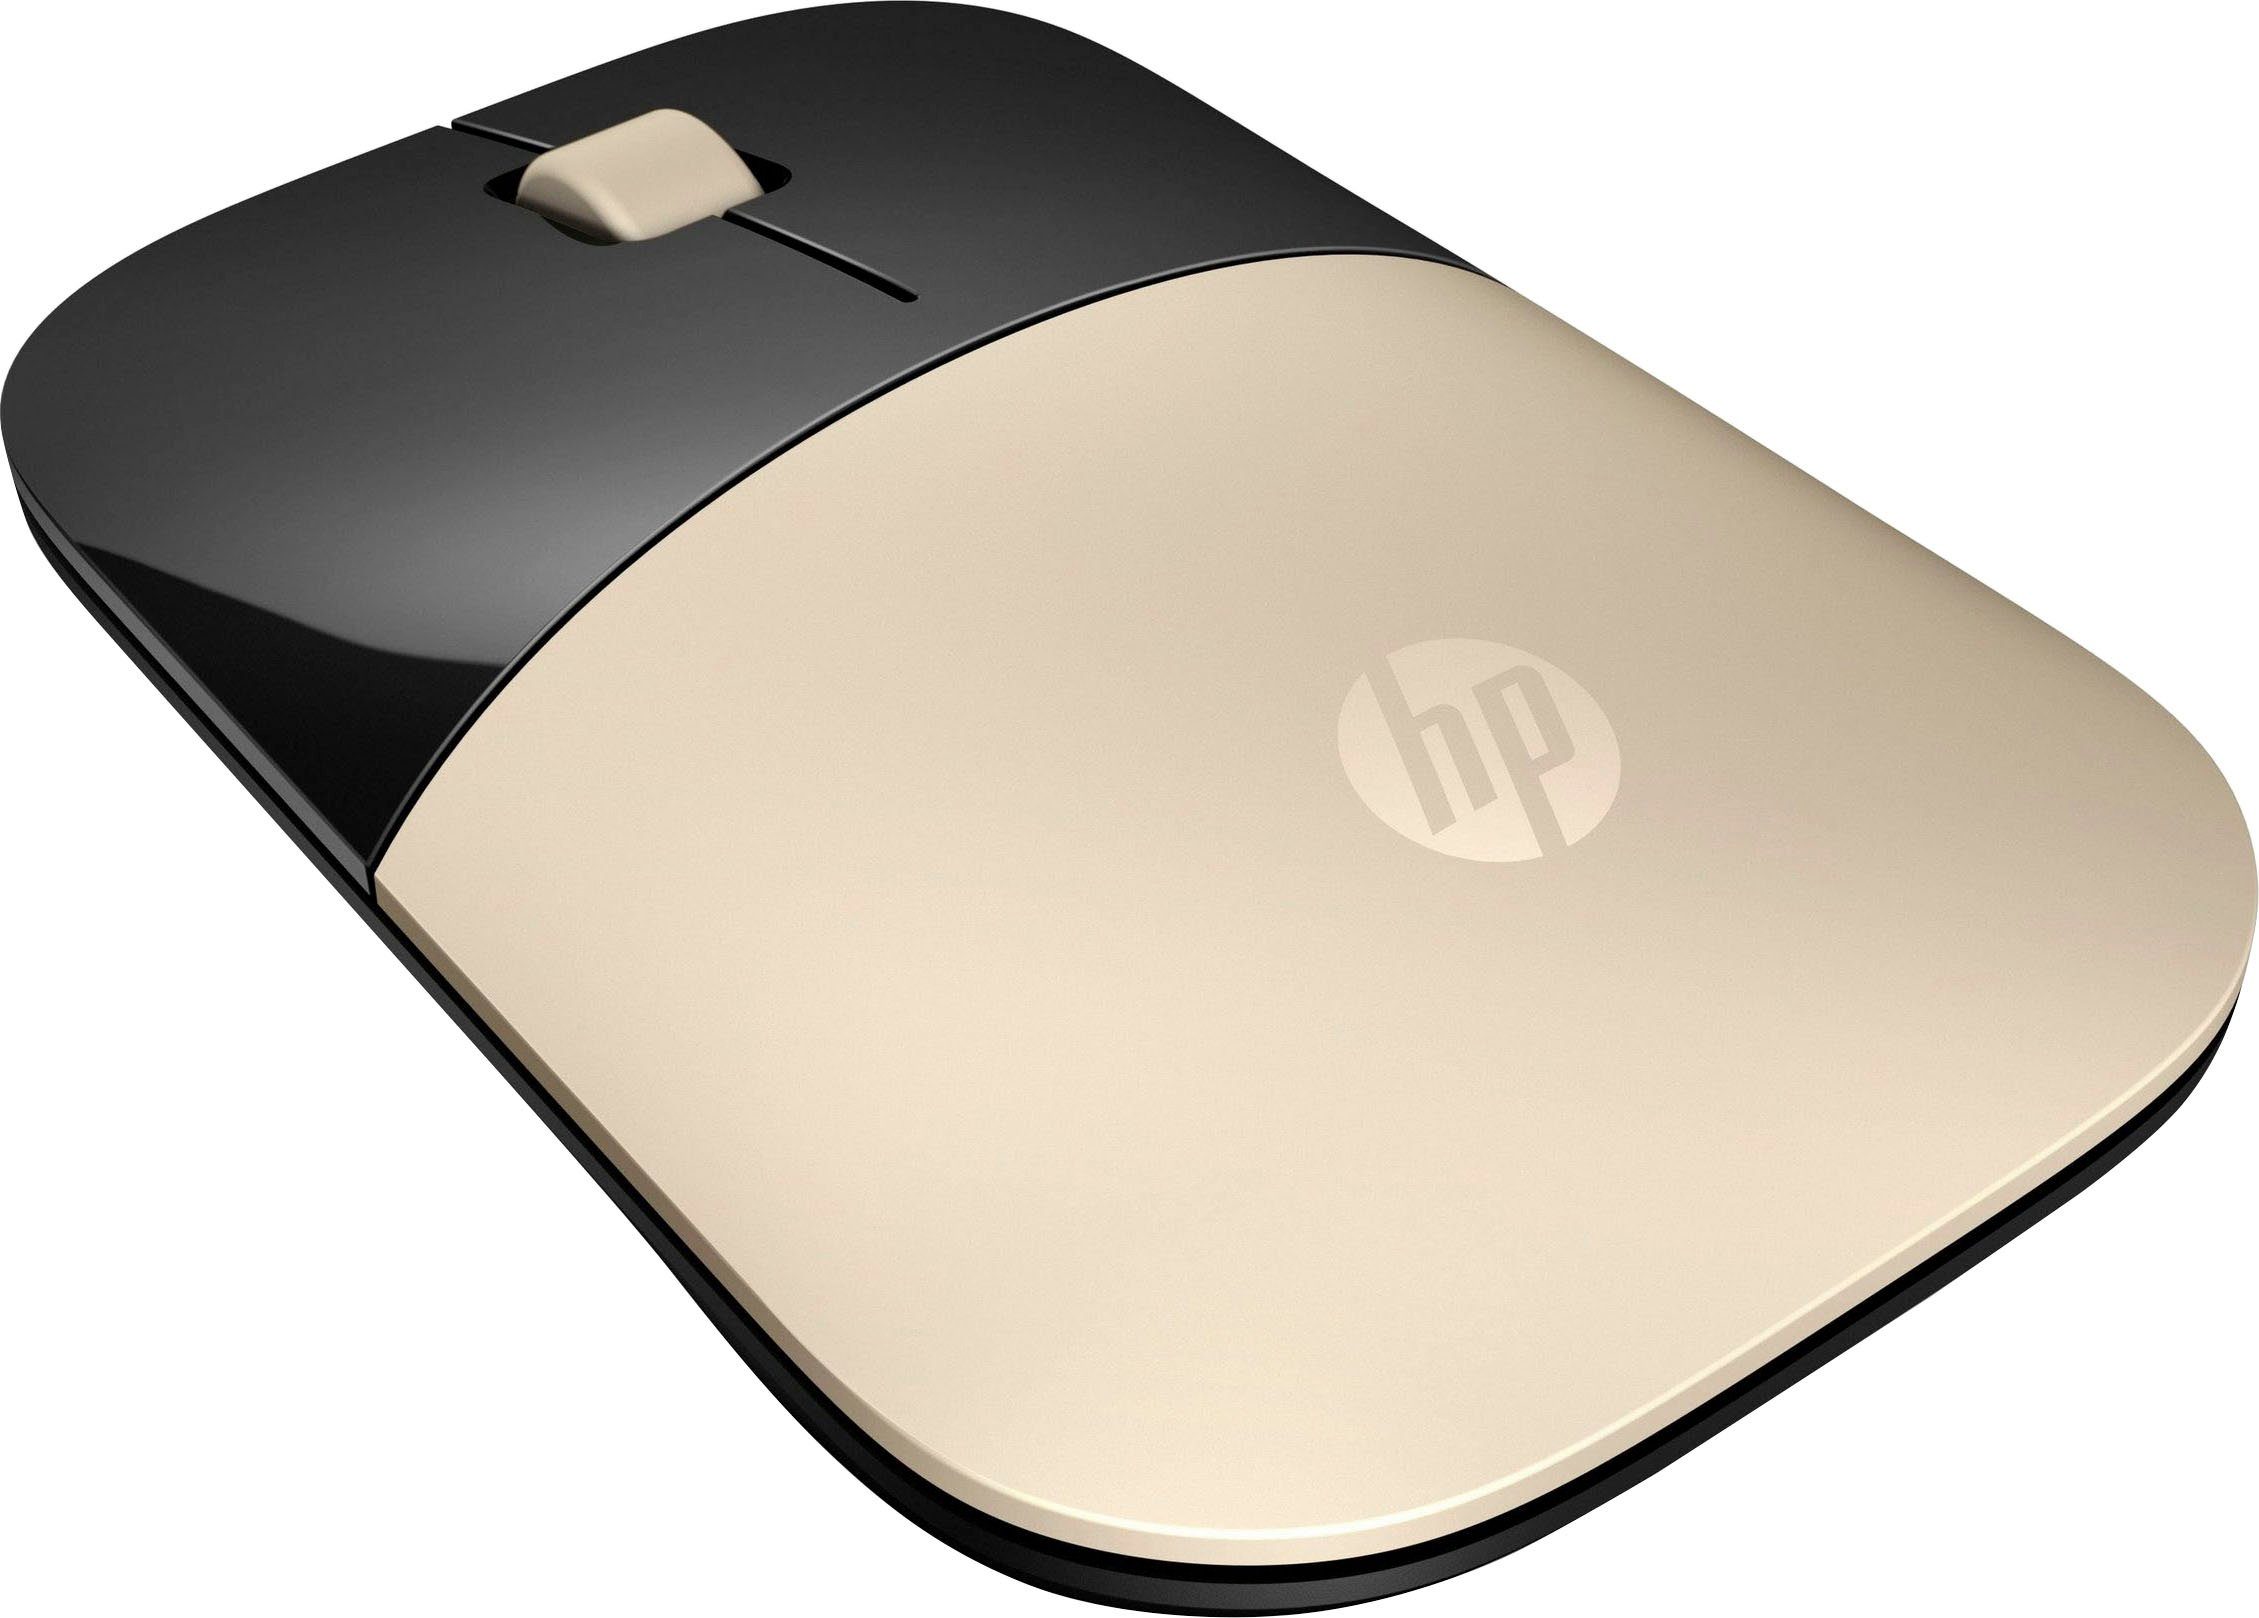 HP Z3700 goldfarben/schwarz Maus